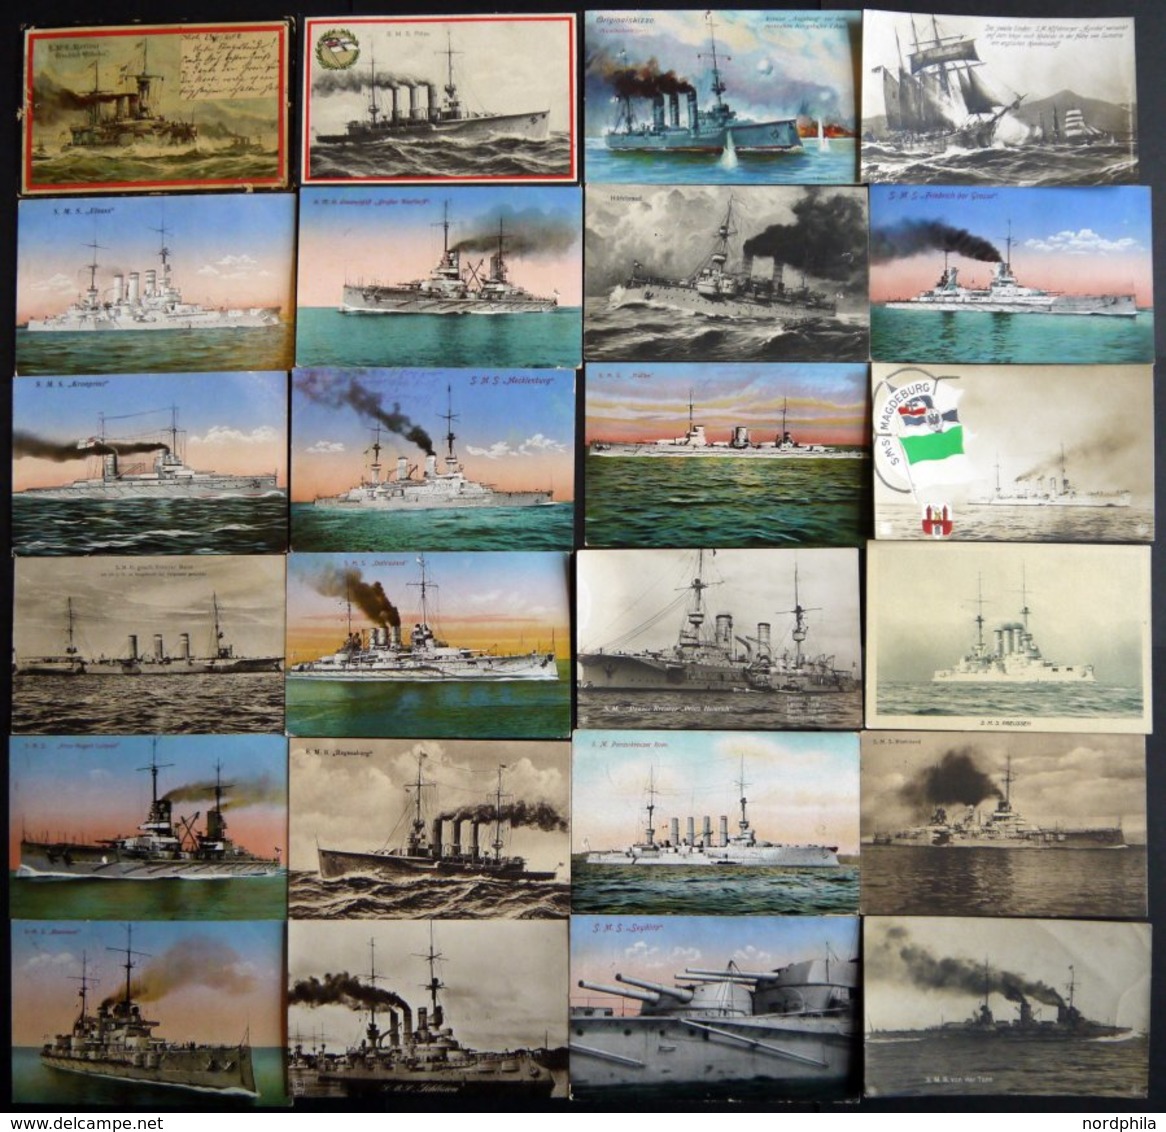 ALTE POSTKARTEN - SCHIFFE KAISERL. MARINE BIS 1918 Kriegsschiffe, Interessante Sammlung Von 54 Karten, Teils Sehr Selten - Krieg